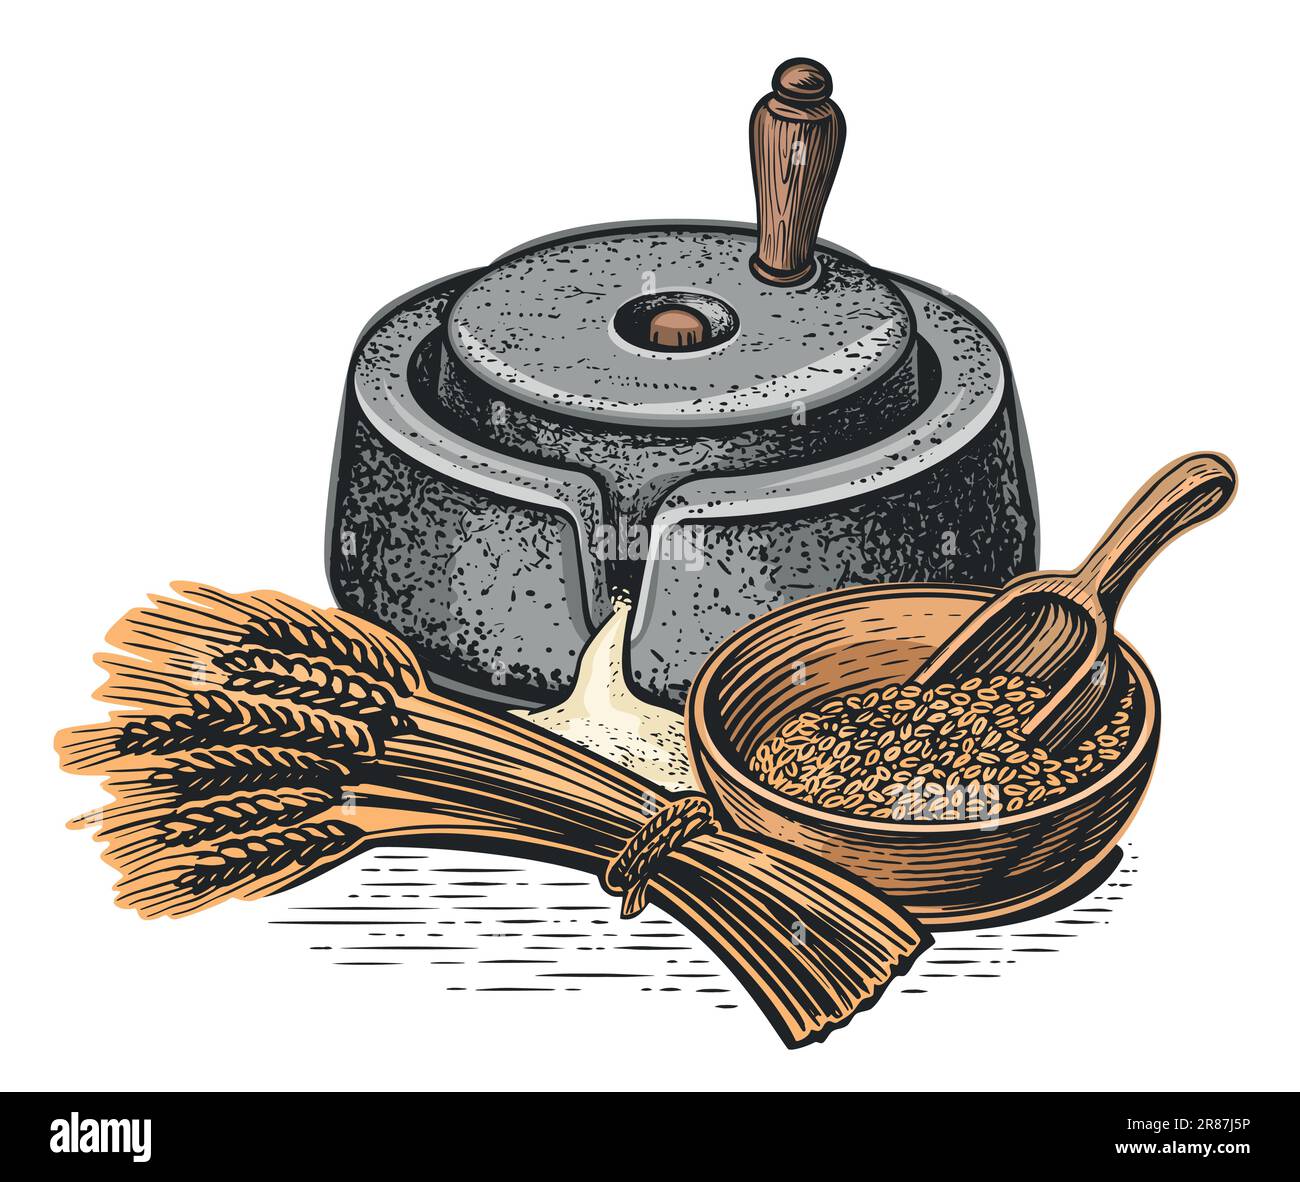 Macine manuali per grano con supporto manico, spighe di grano, cereali. Cottura e cottura della farina, ingredienti alimentari. Vettore Illustrazione Vettoriale